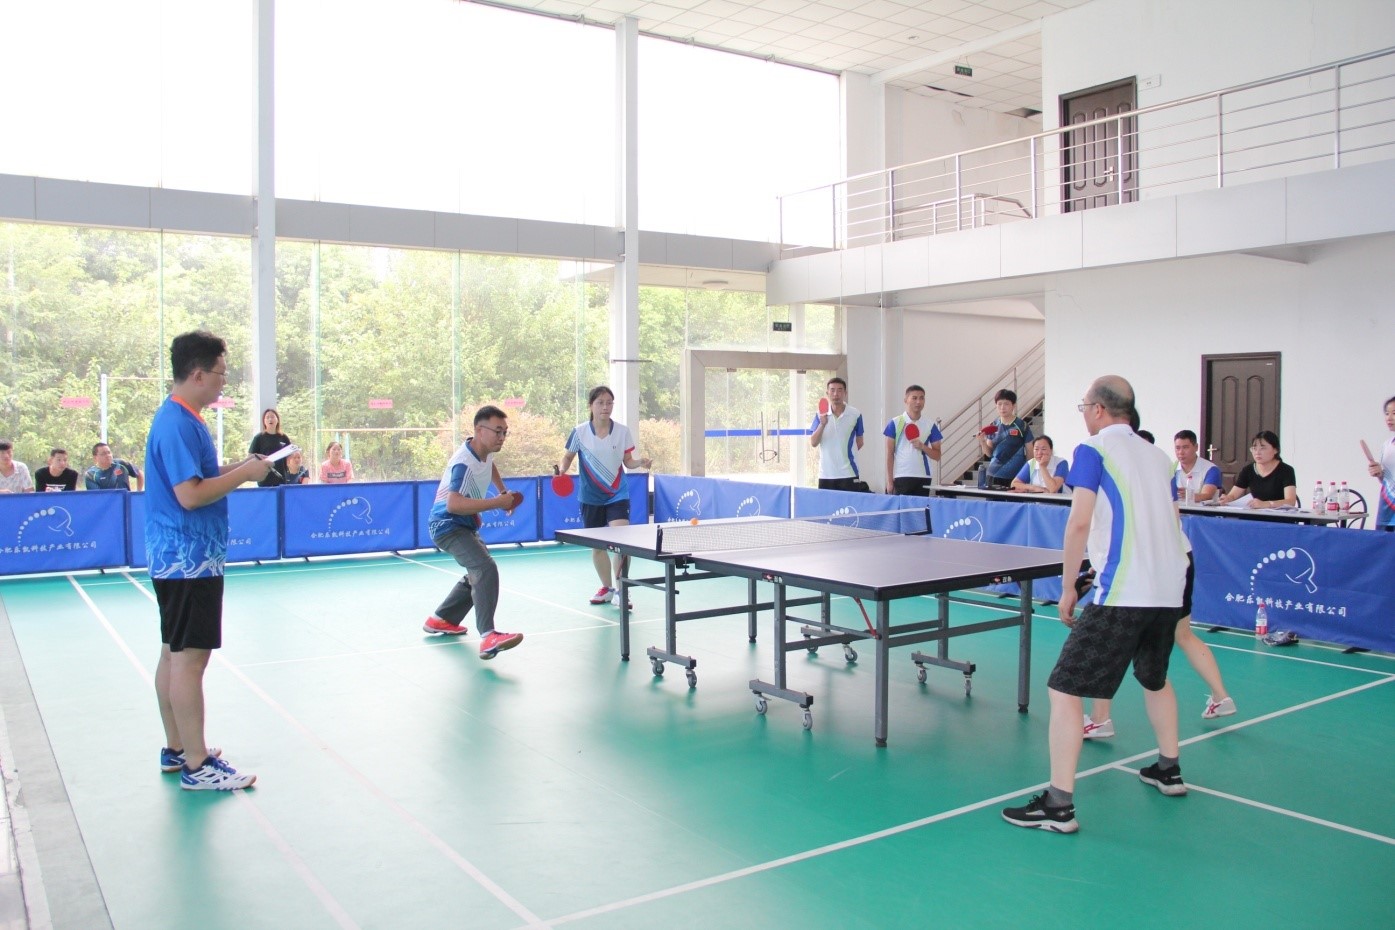 bbin体育官方网站乐凯成功举办第四届乒乓球比赛